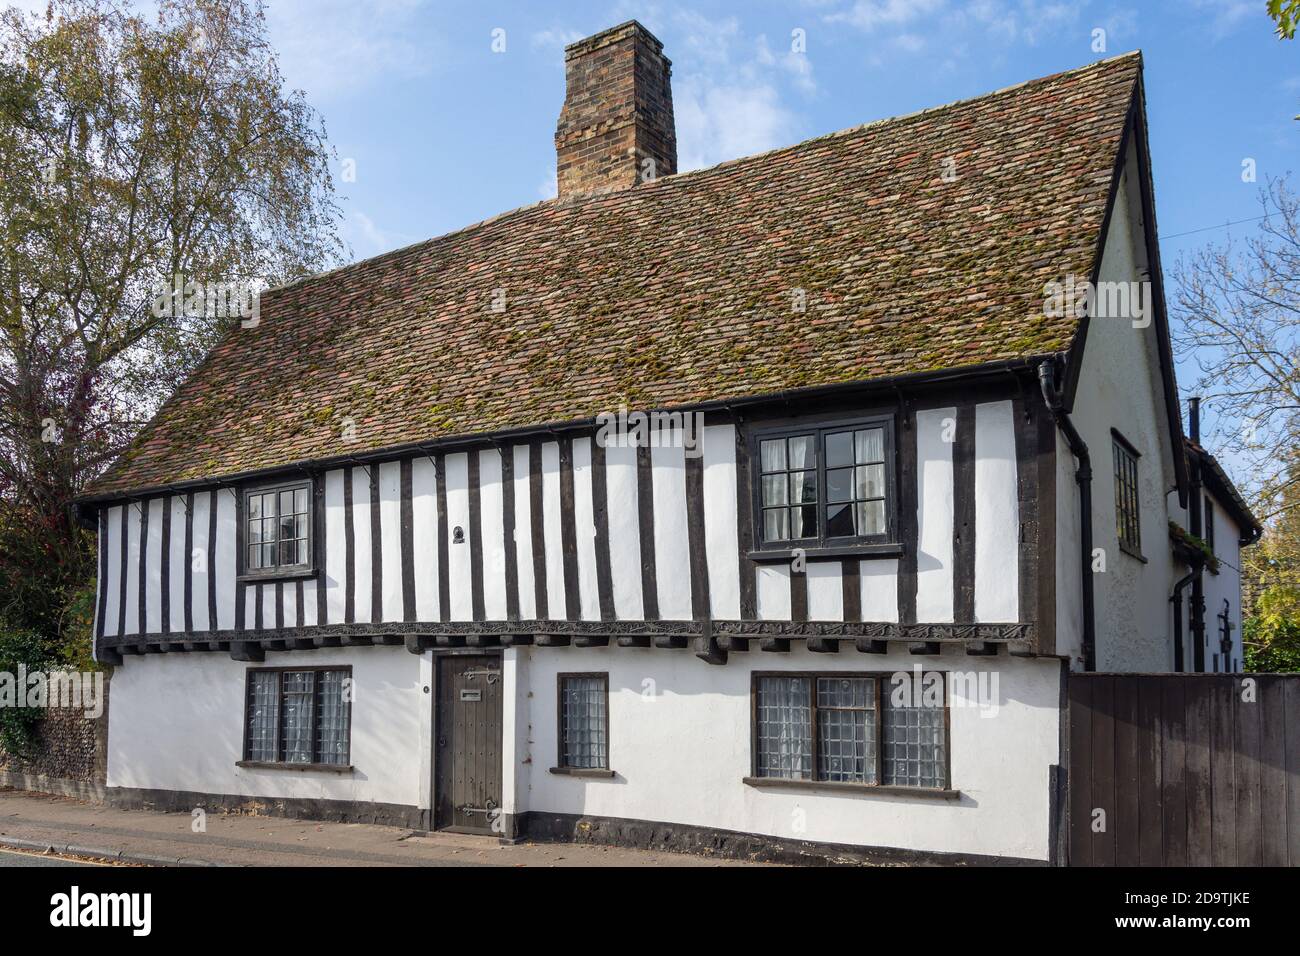 Cottage à pans de bois, High Street, Great Shelford, Cambridgeshire, Angleterre, Royaume-Uni Banque D'Images